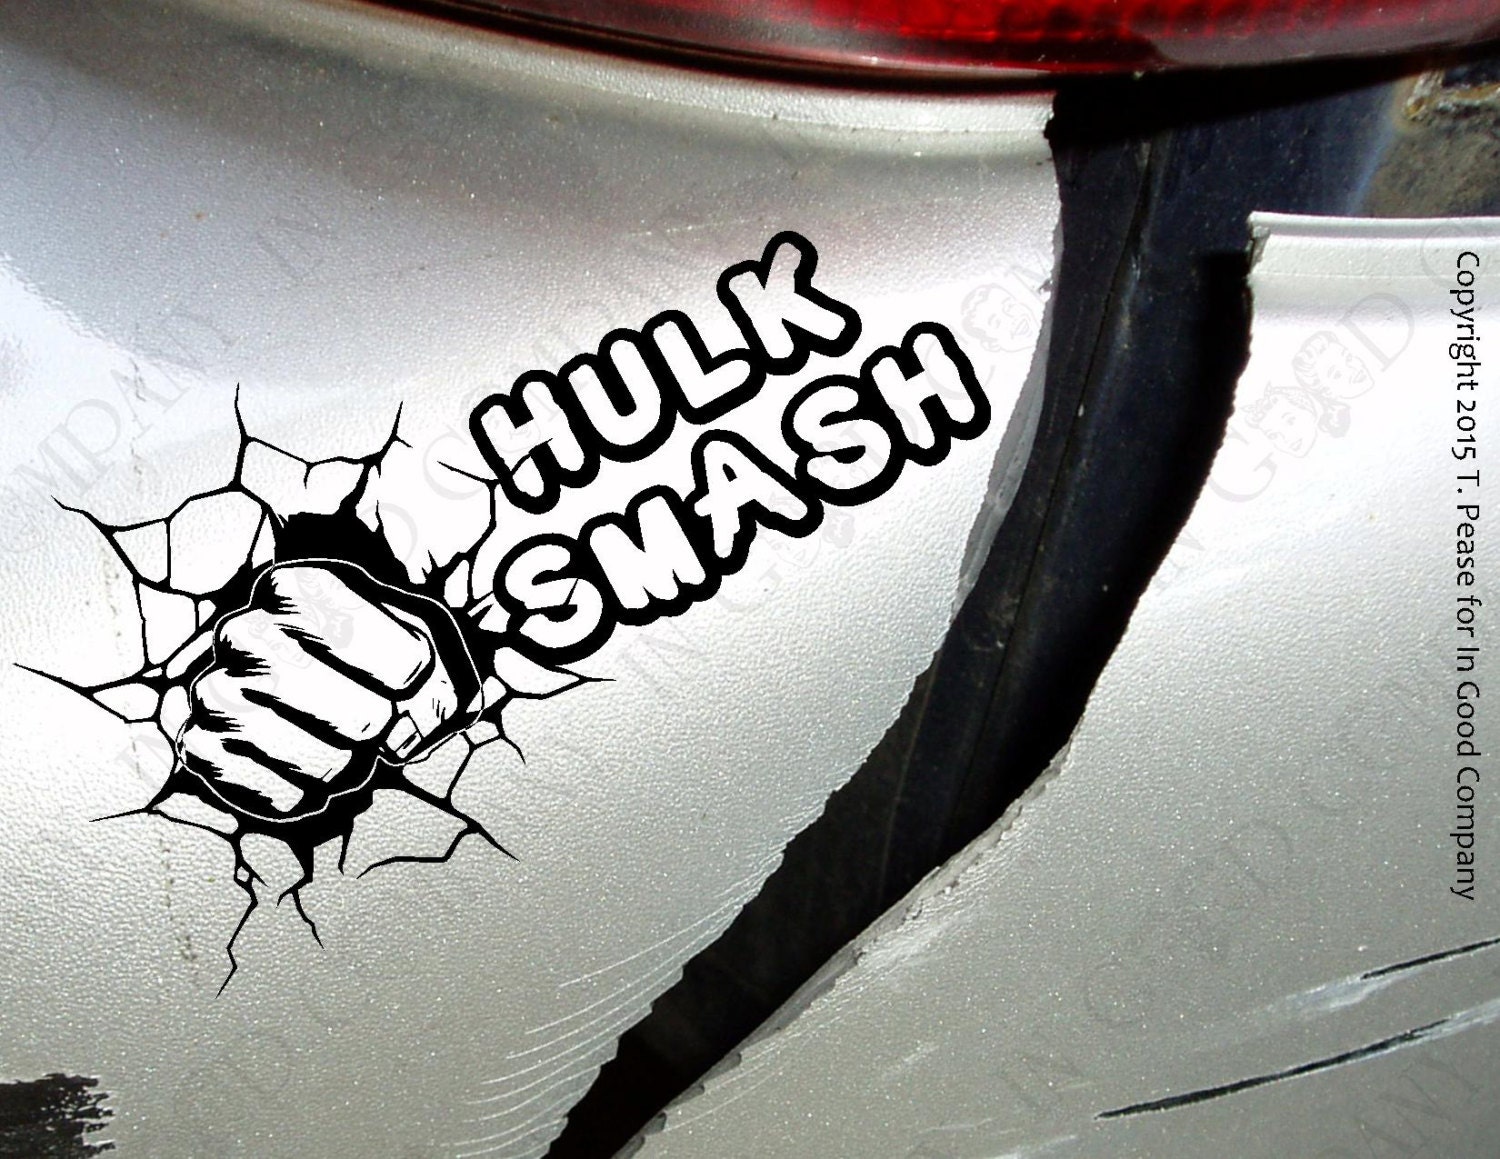 No Smash Incredible Bulk - Vinyl Sticker